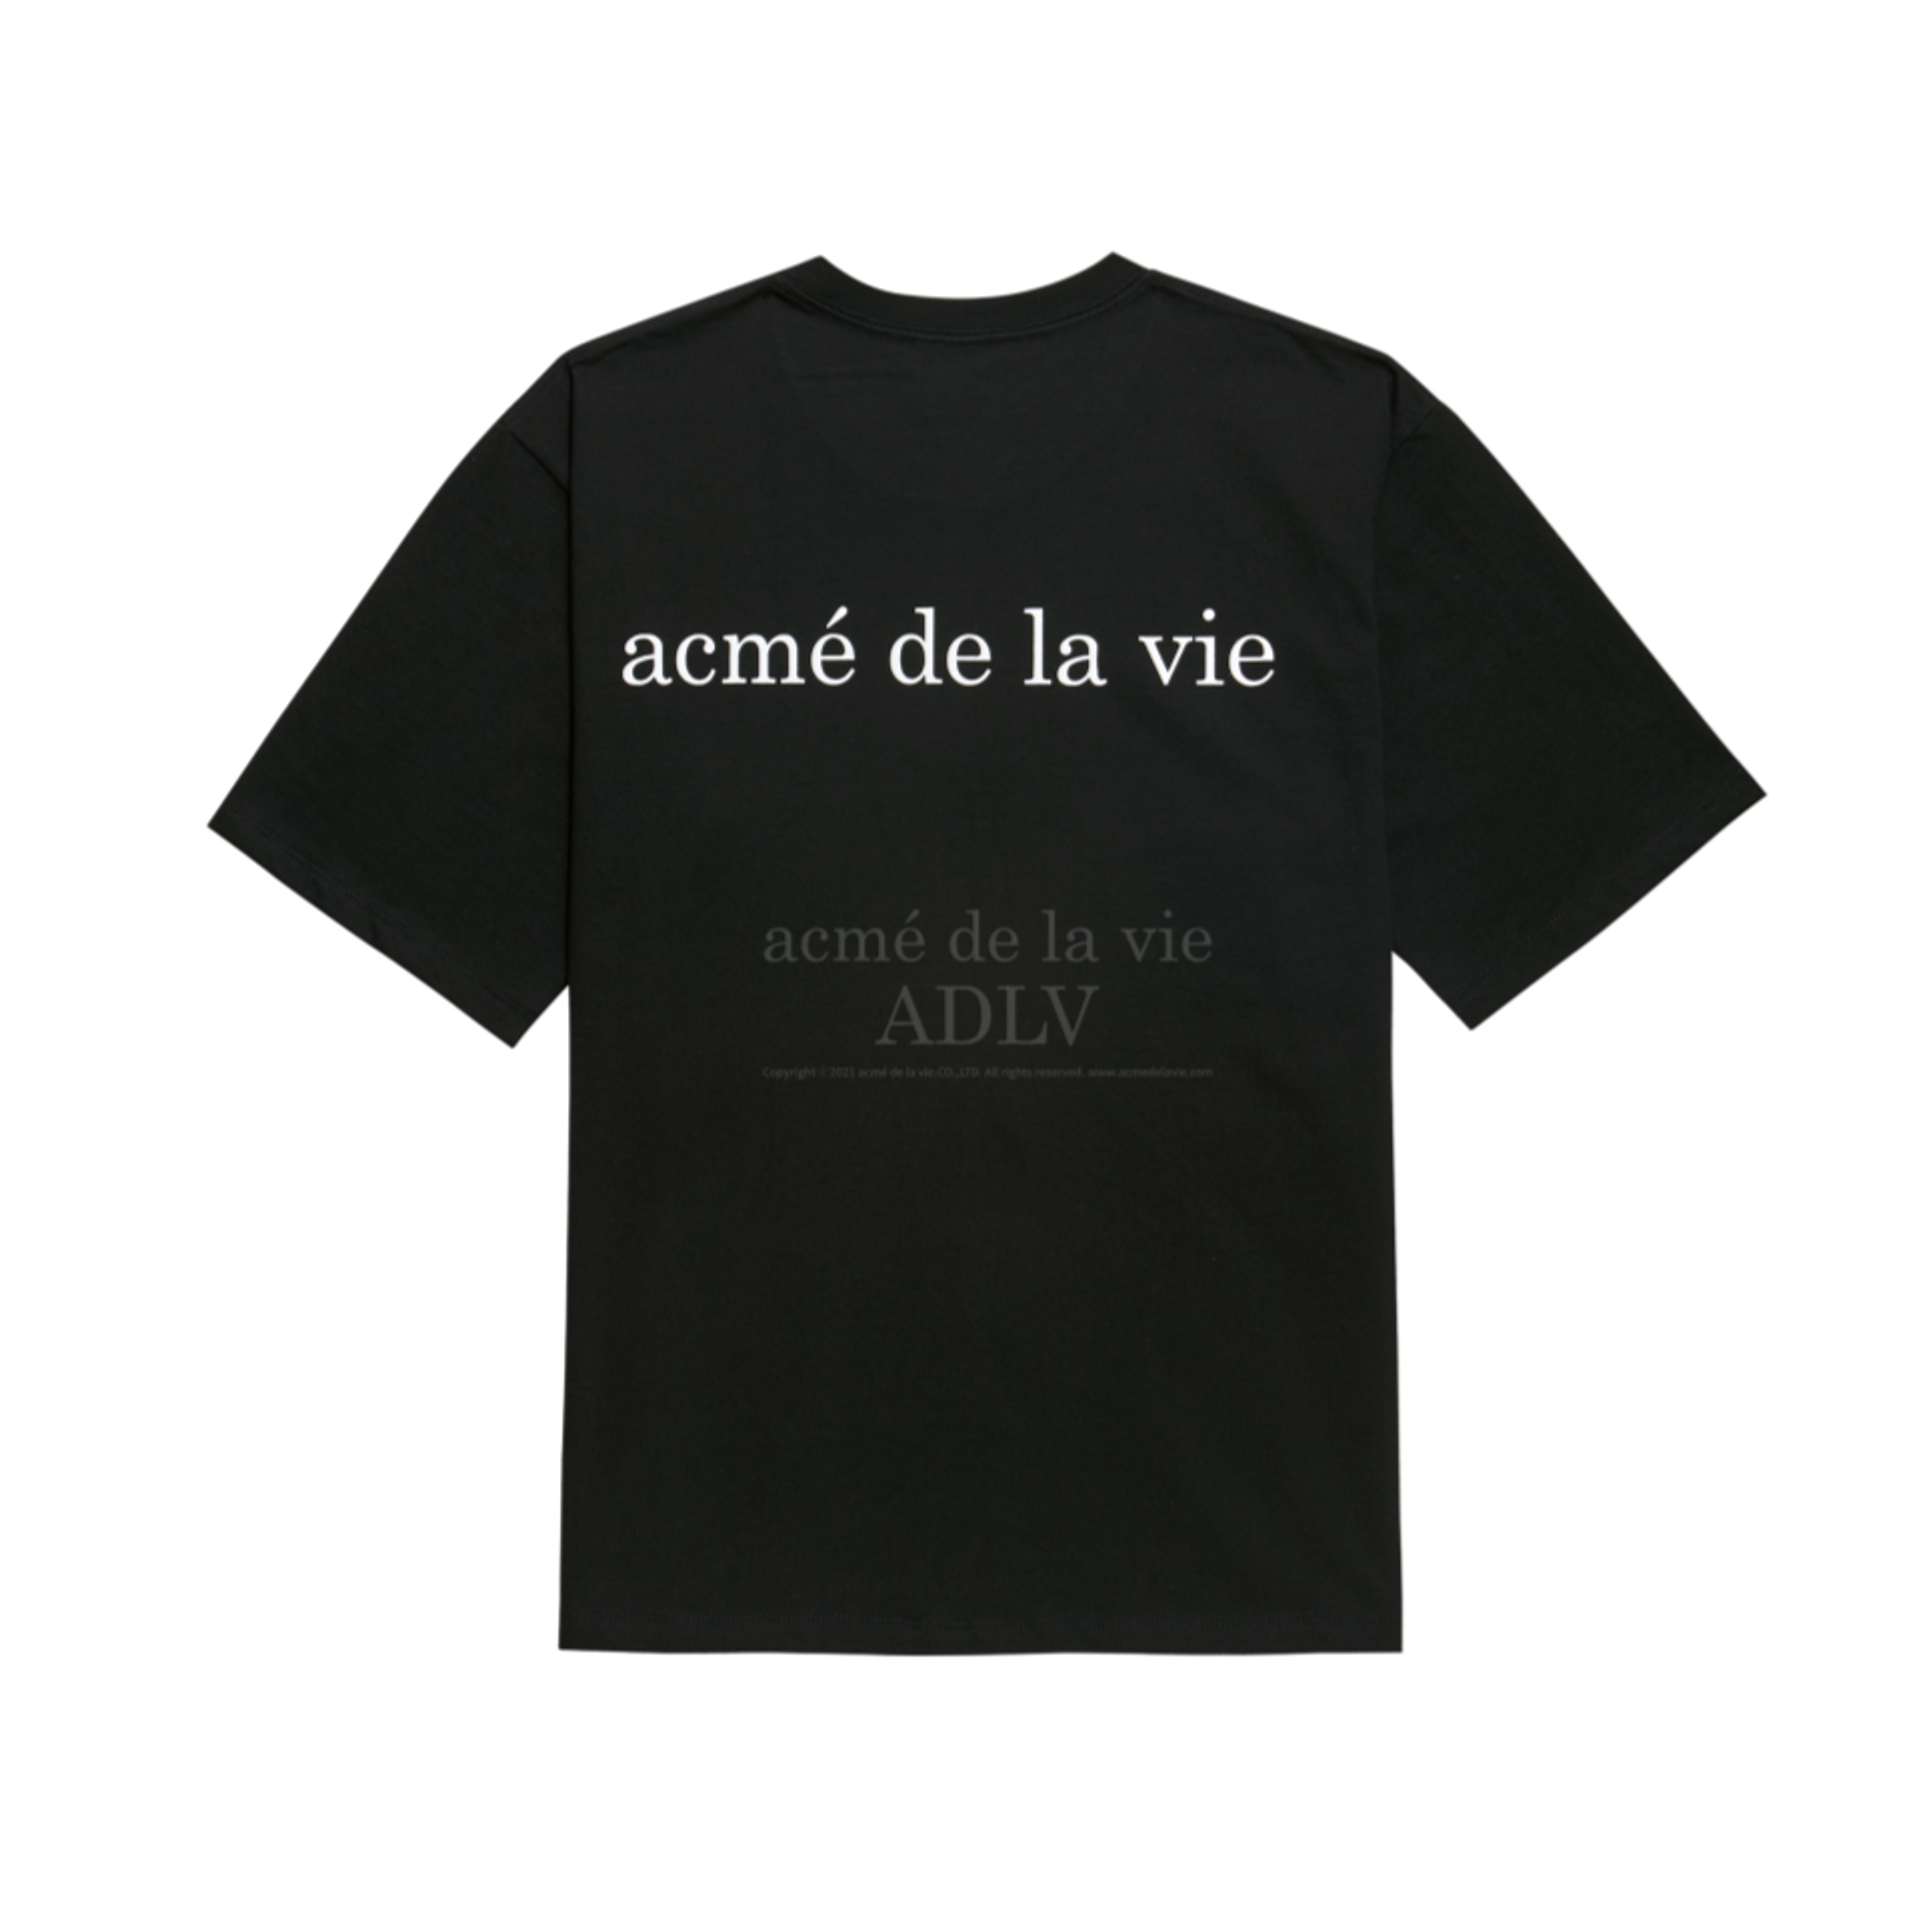 Acme De La Vie Baby Face Short Sleeve T-Shirt Black Donuts3 